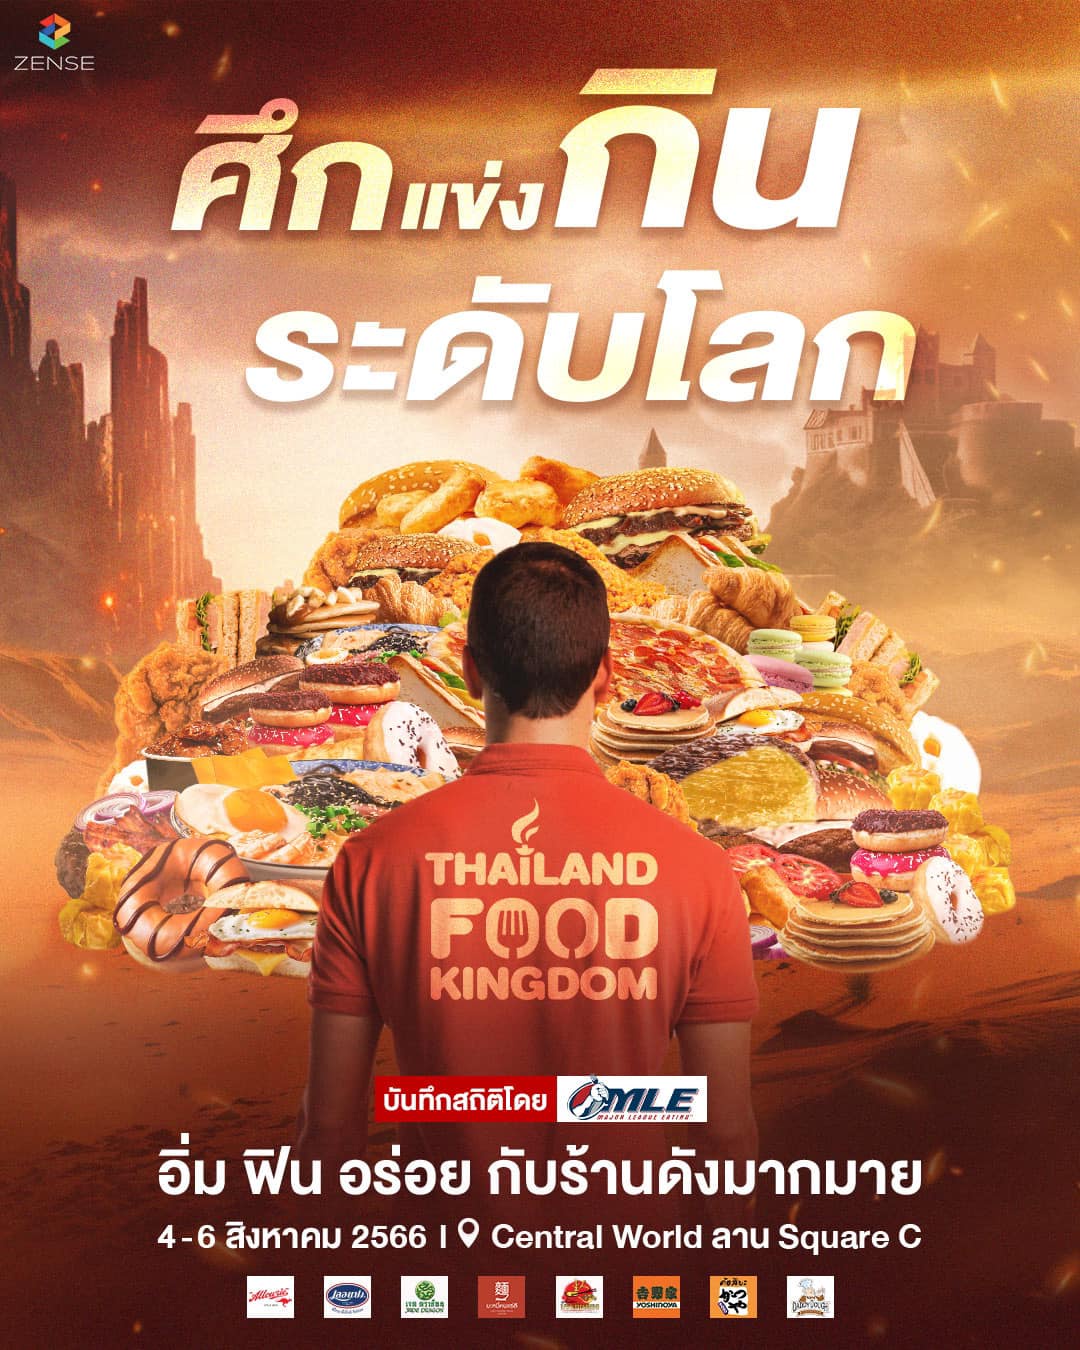 เซ้นส์ เอนเตอร์เทนเมนท์ จับมือ Major League Eating รวมแชมป์นักกินจุระดับโลก มาท้าแข่งคนไทยใน Thailand Food Kingdom